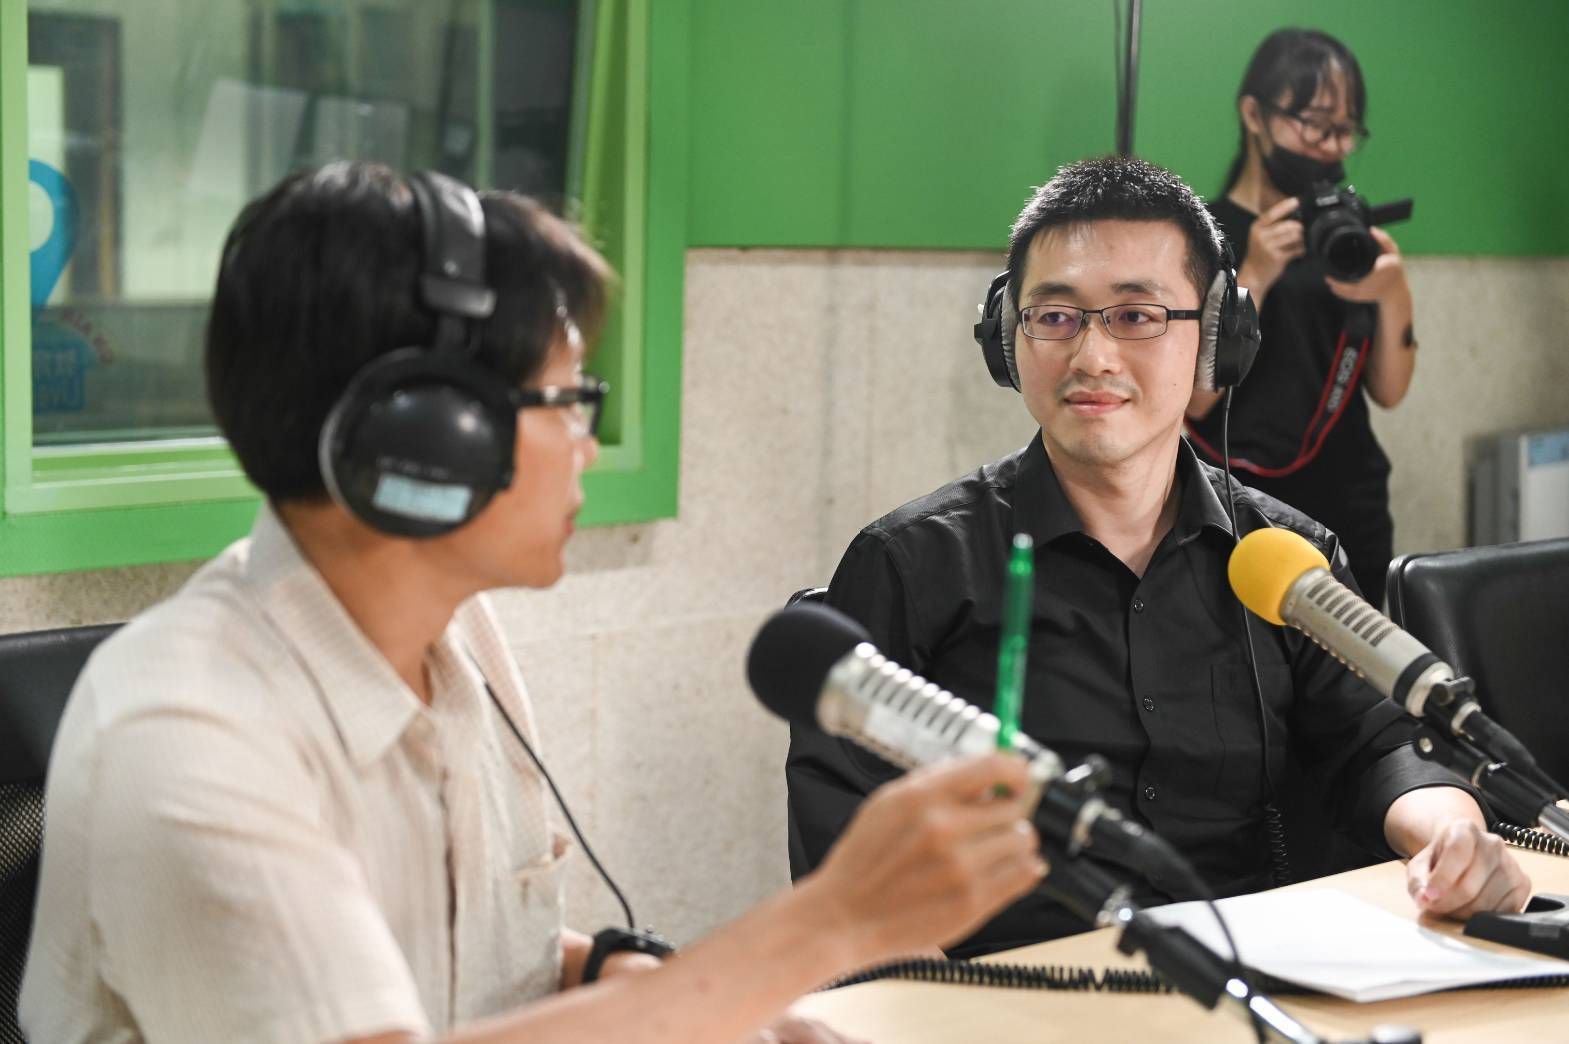 紀錄片導演陳正勳專注地聆聽節目主持人邱一峰的問題